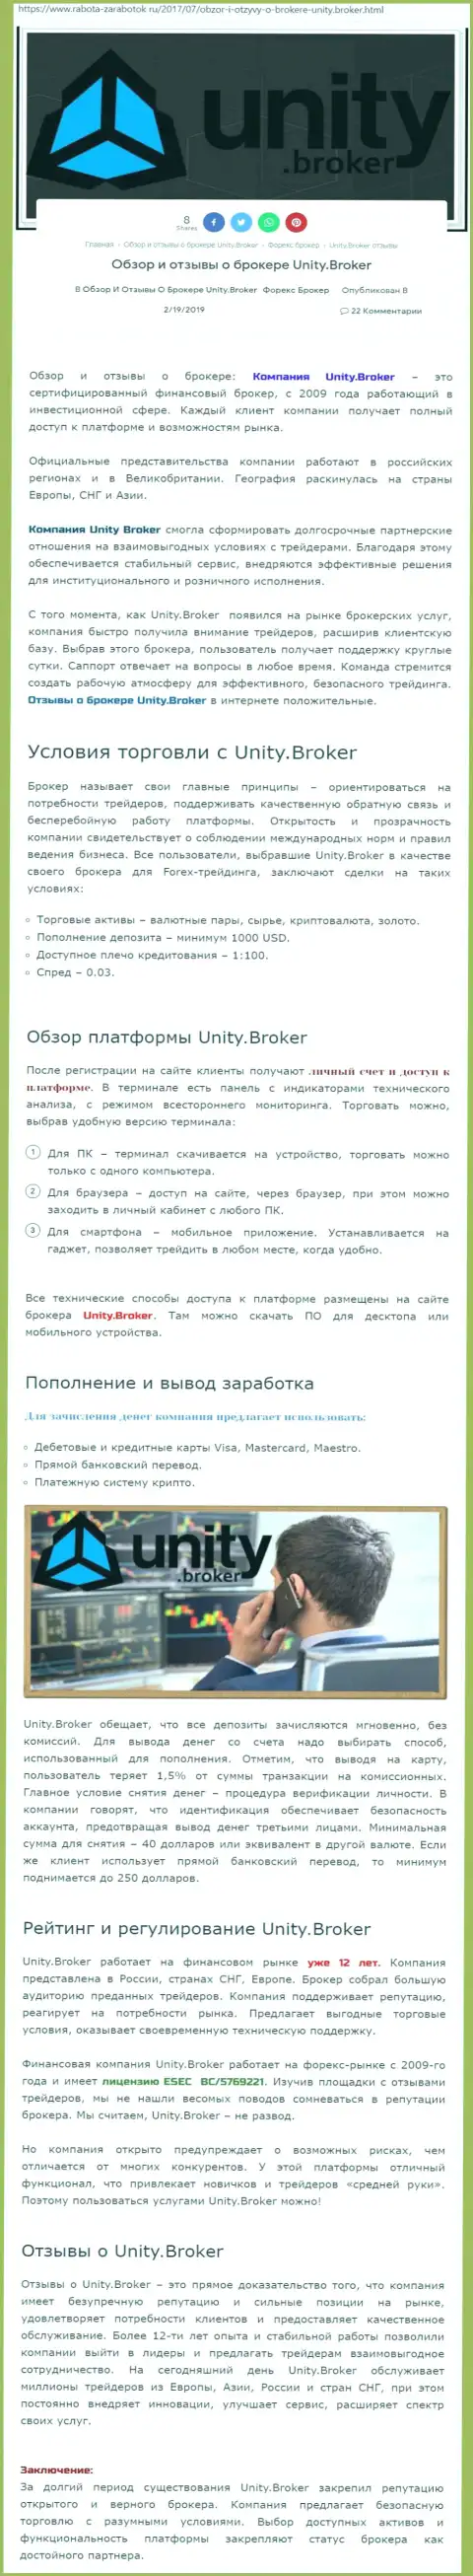 Обзорная информация Форекс компании Unity Broker на информационном портале Rabota Zarabotok Ru